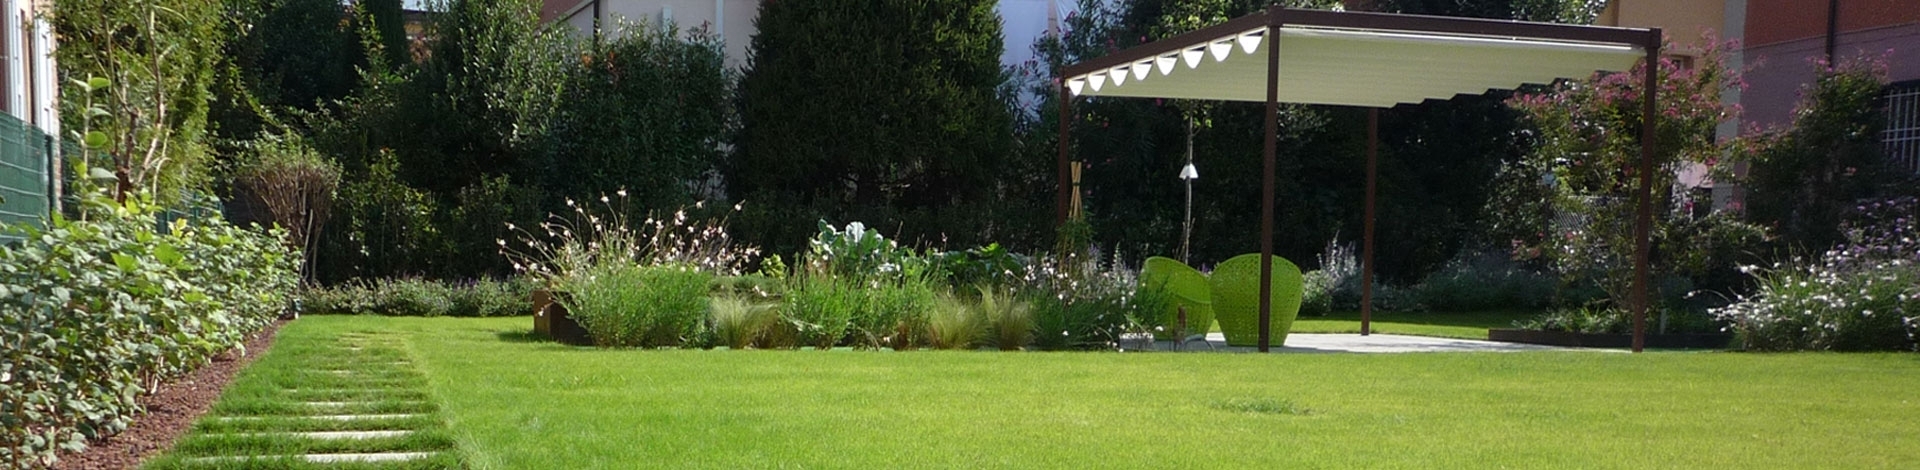 Giardini, Realizzazione Giardini, Come Realizzare un Giardino, Giardini Mediterranei, Giardini Zen